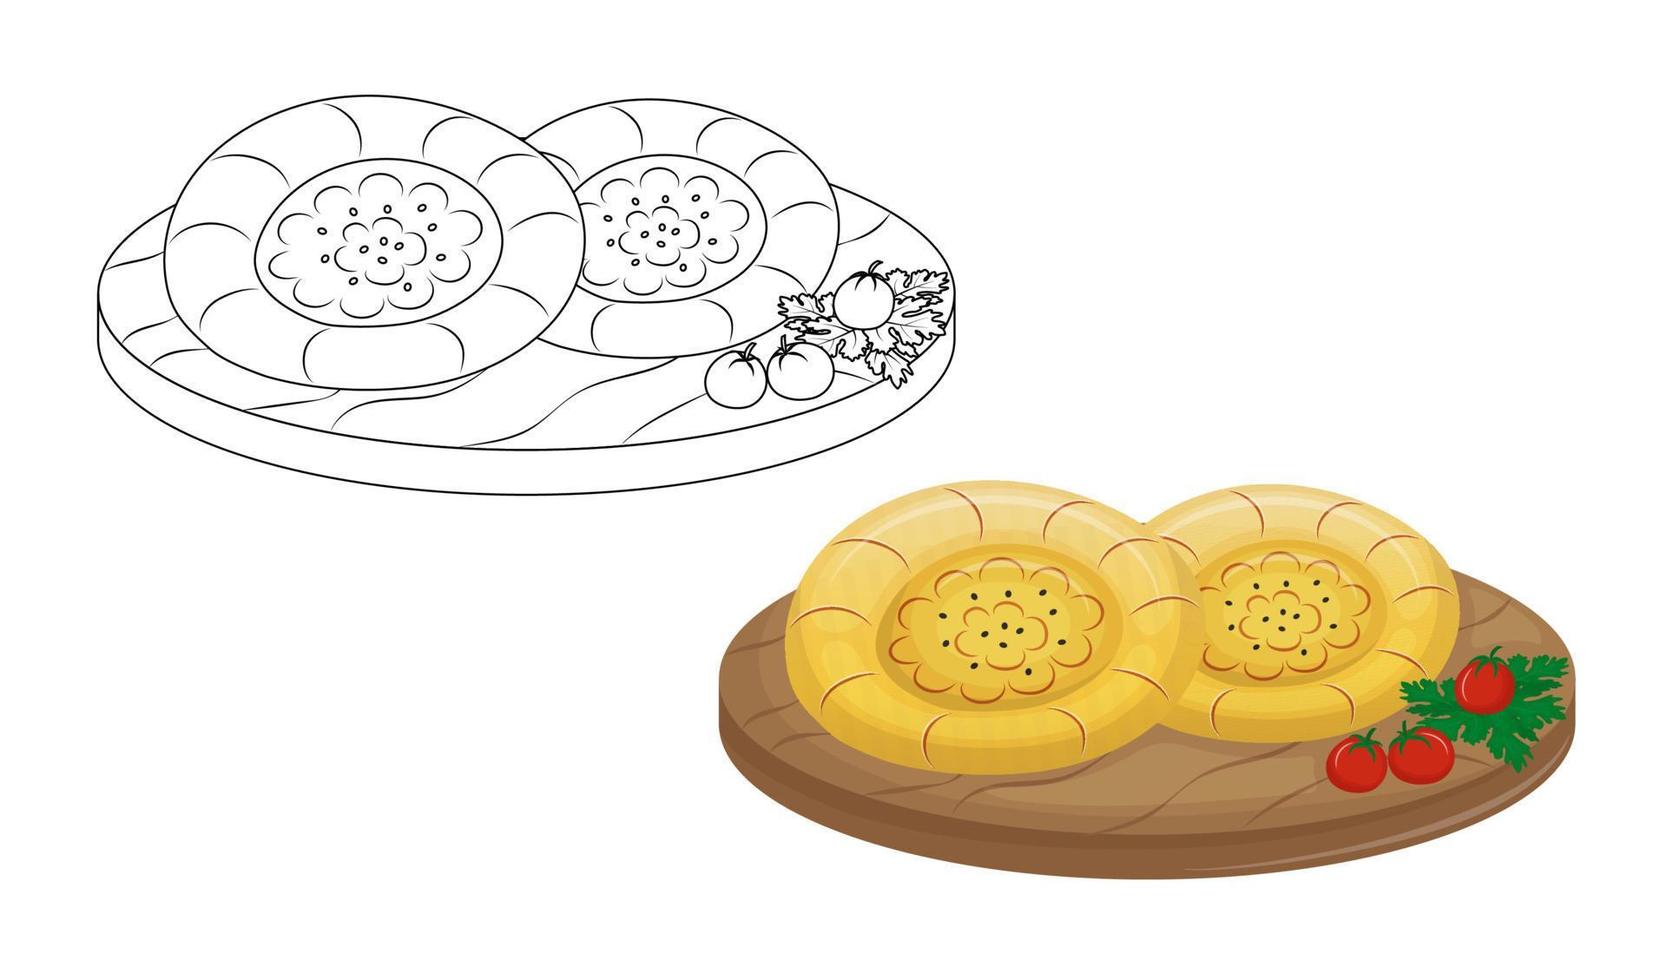 traditionnel central asiatique pain cuit dans une tandoor. des gamins coloration livre pour élémentaire ecole.tandyr galette ou samoussa. vecteur illustration.